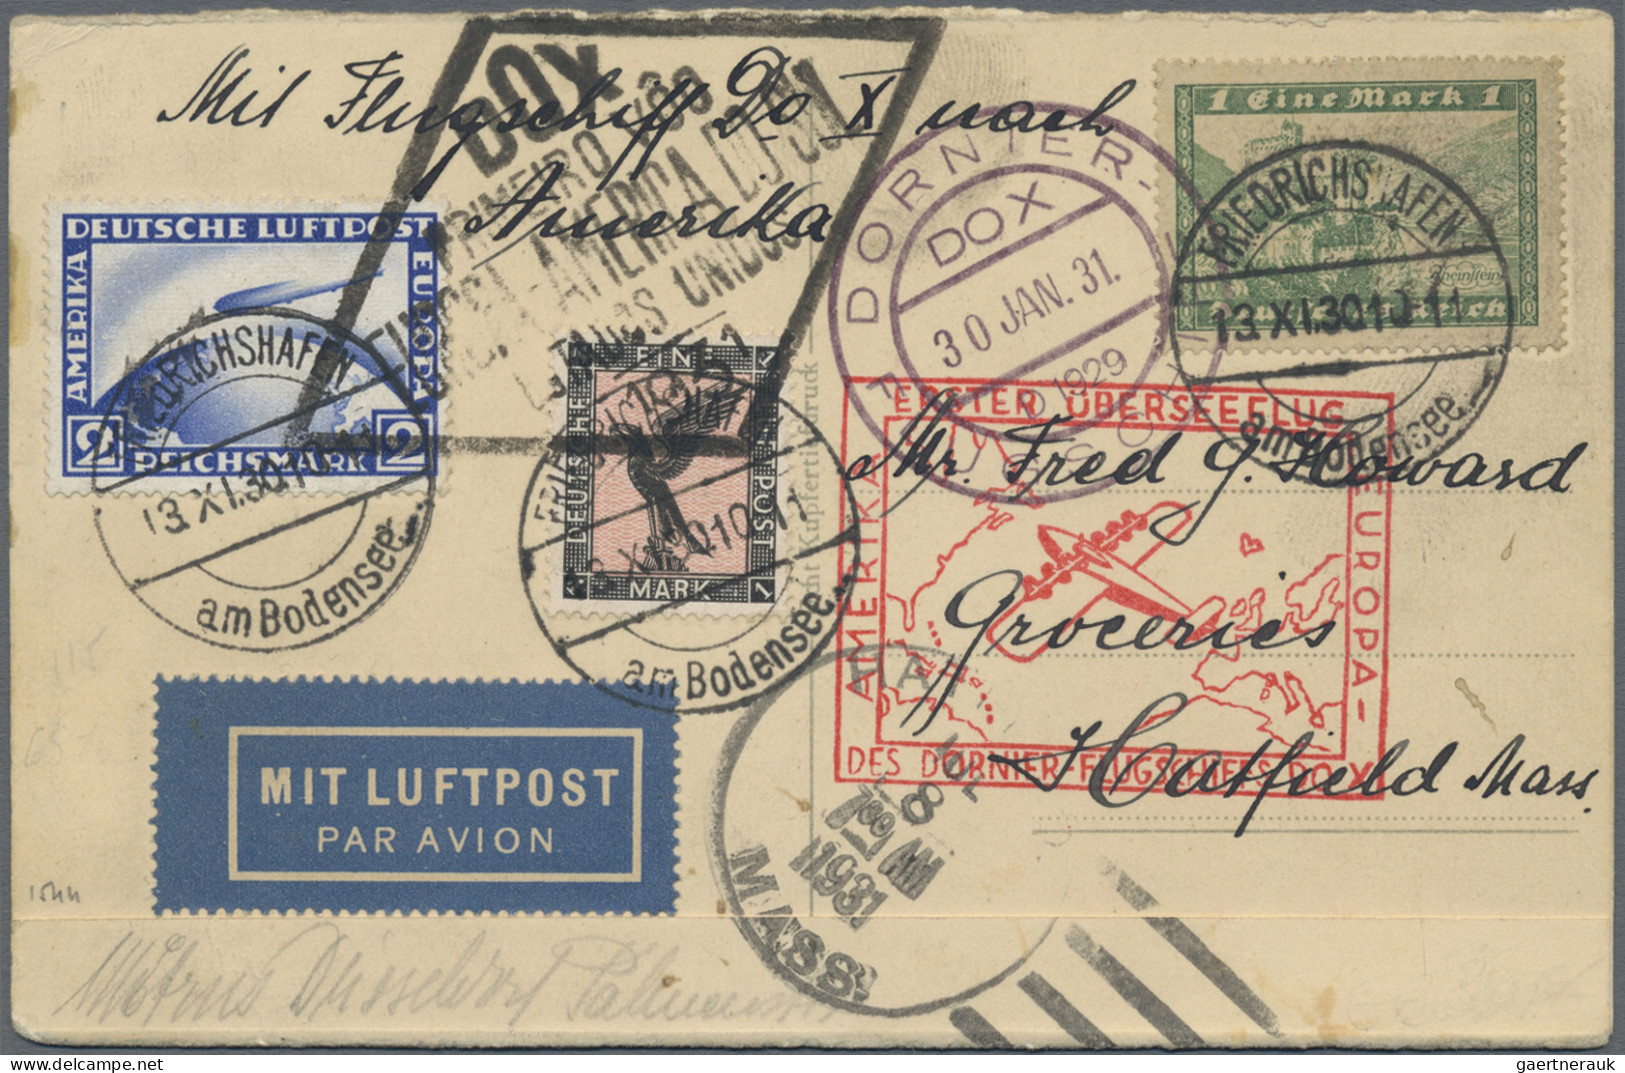 Air Mail - Germany: 1912/1939, interessanter Posten von insgesamt 19 vielseitige